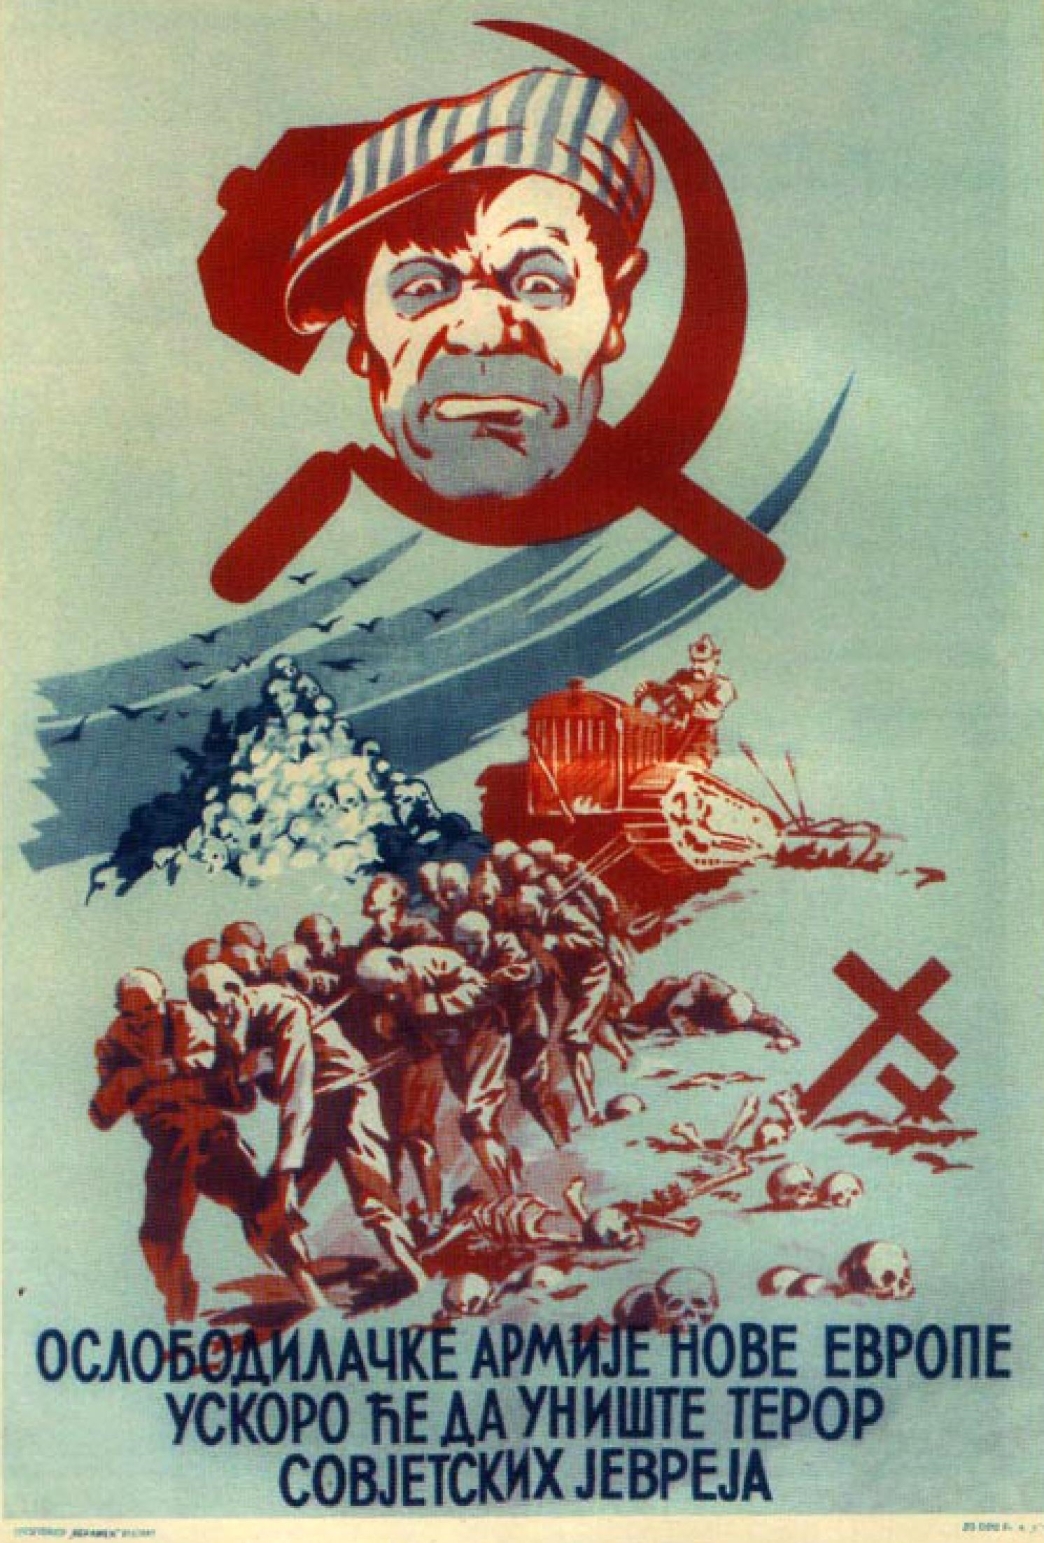 Антисоветская агитация. Антисоветские плакаты в нацистской Германии. Немецкие антикоммунистические плакаты. Антисоветские плакаты второй мировой войны. Немецкие антисоветские плакаты времен второй мировой войны.